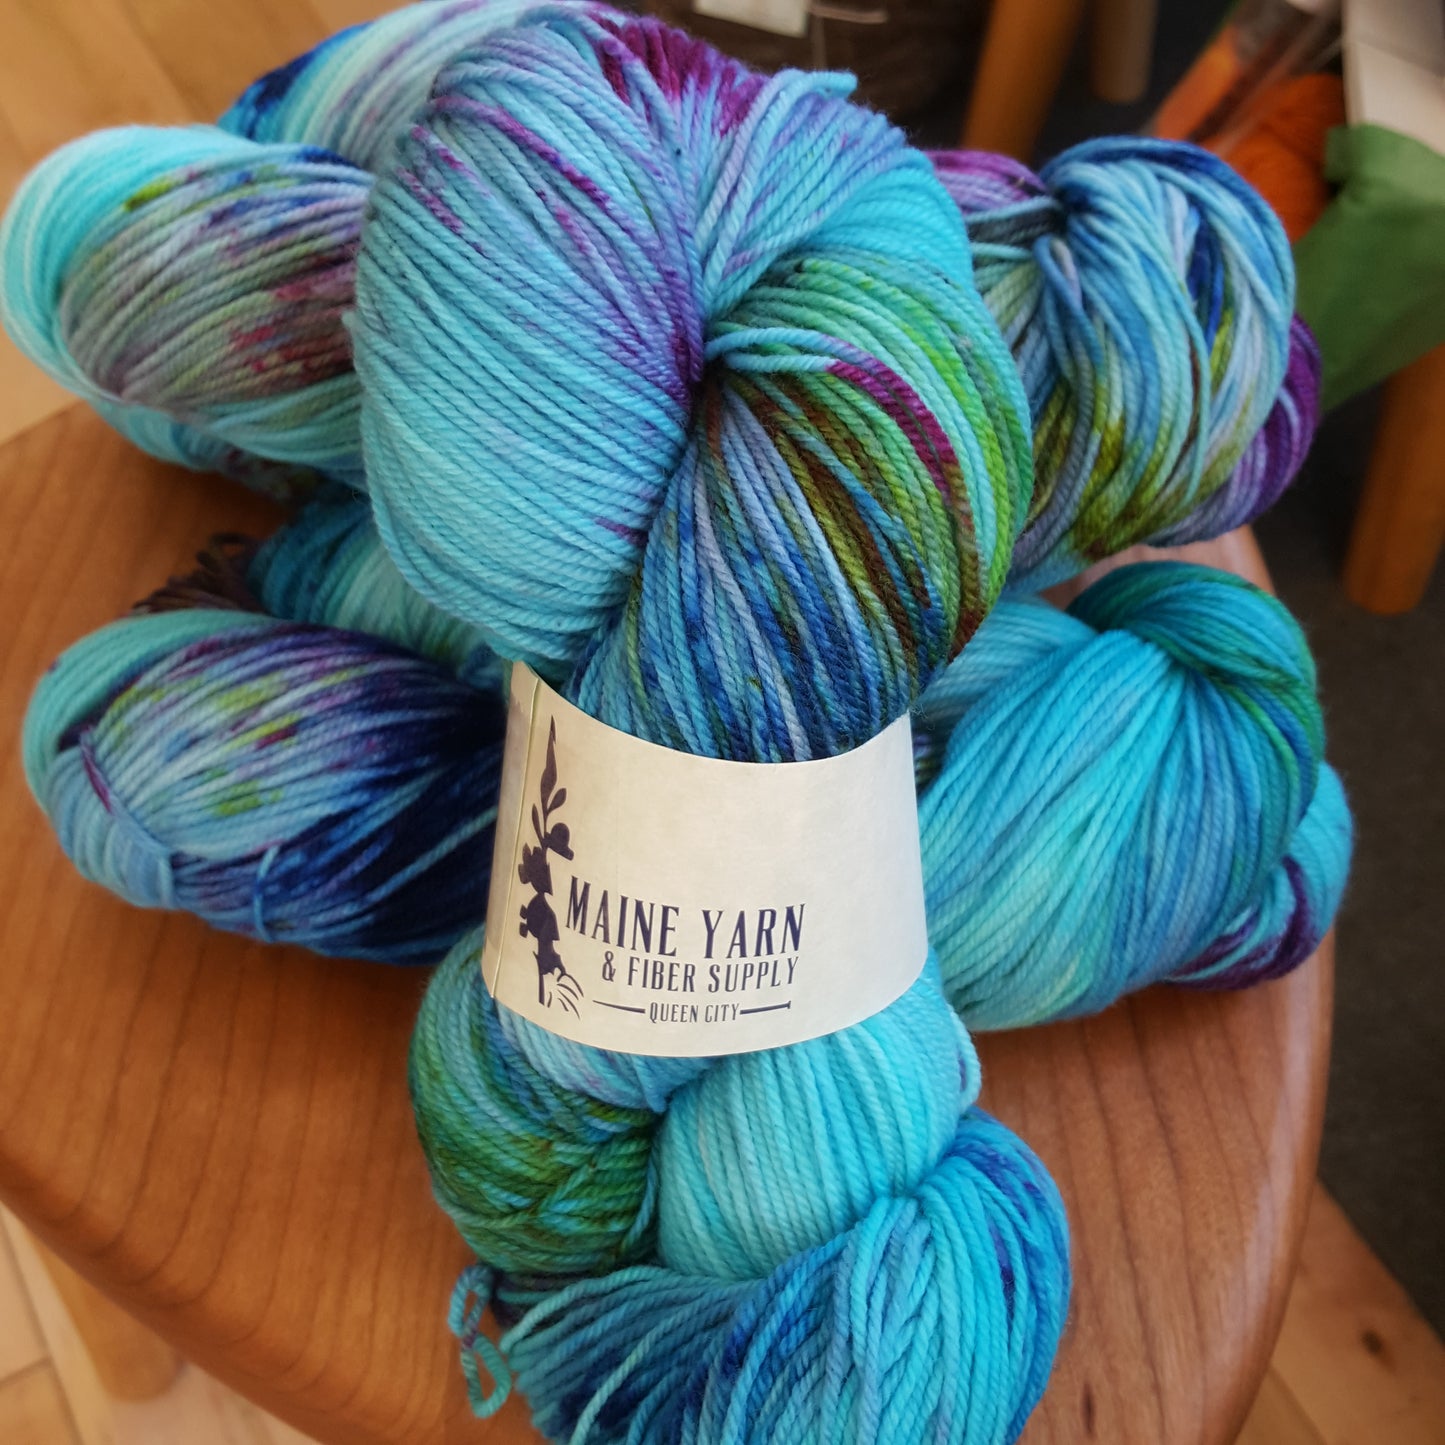 Monthly Yarn Club - Maine Yarn & Fiber Supply